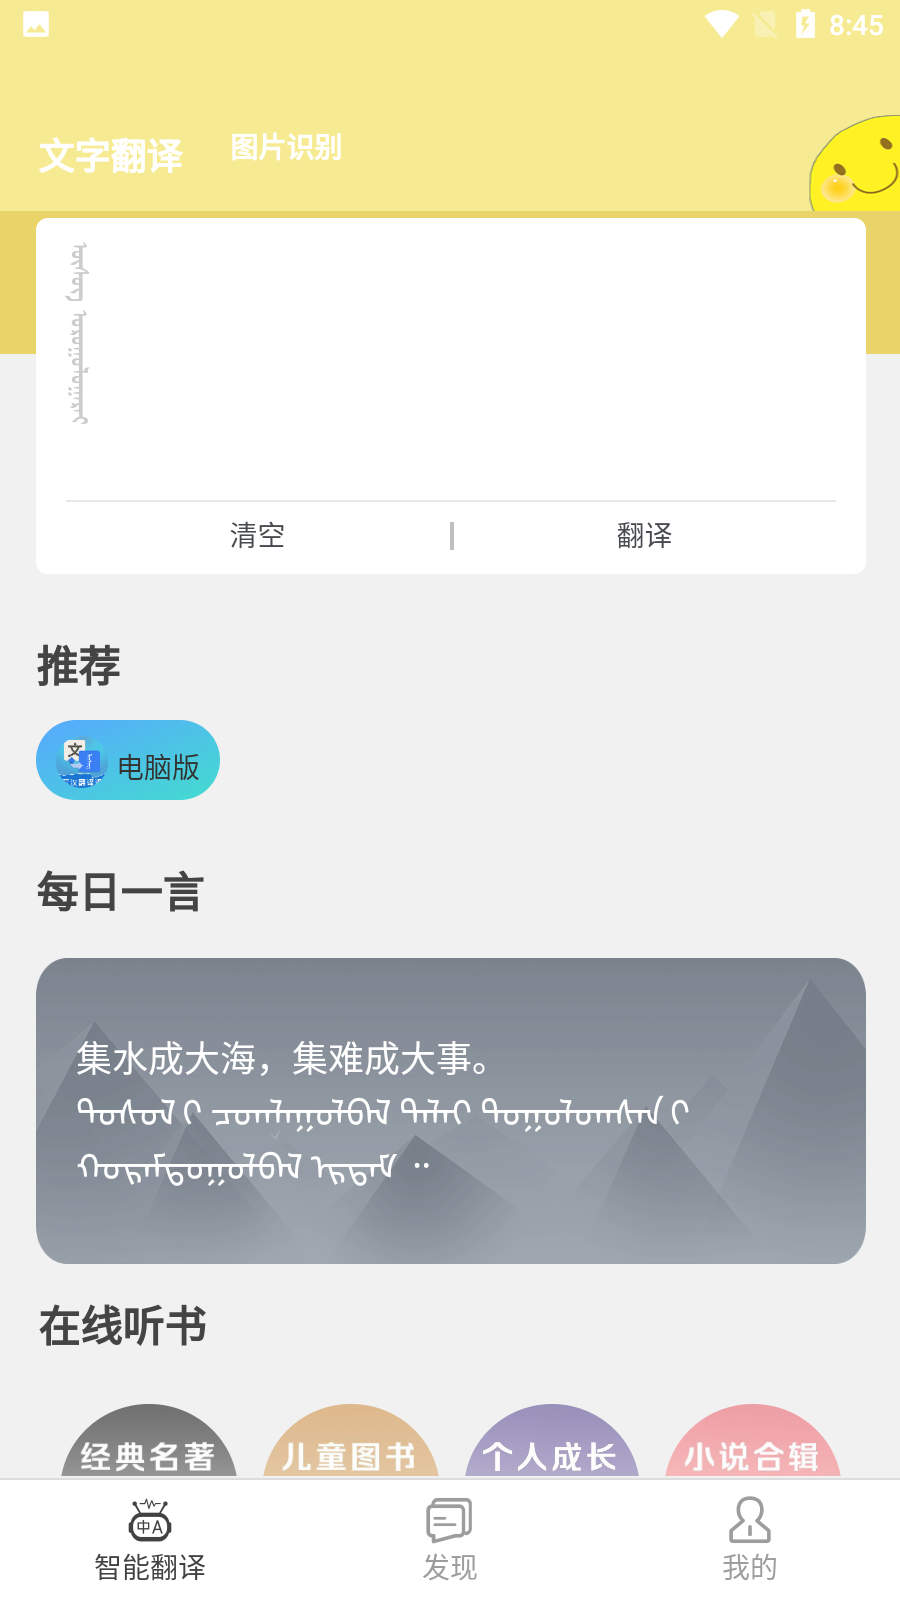 蒙古文翻译词典app 截图1